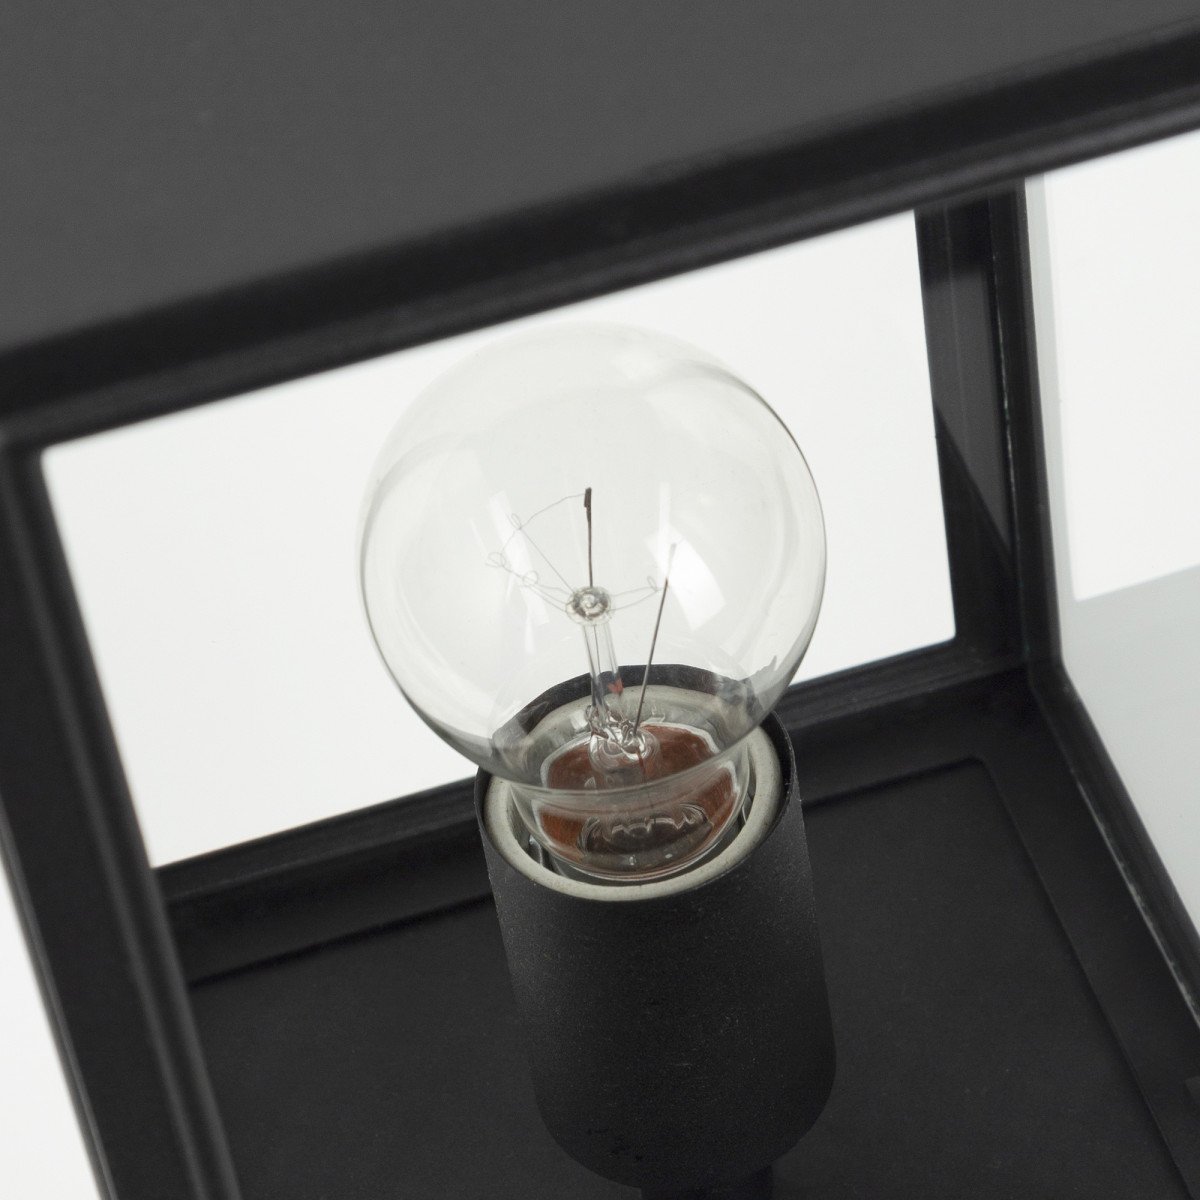 Lampe d'extérieur potelet Soho (7536d4s1) avec LED smart WIFI | Nostalux.fr